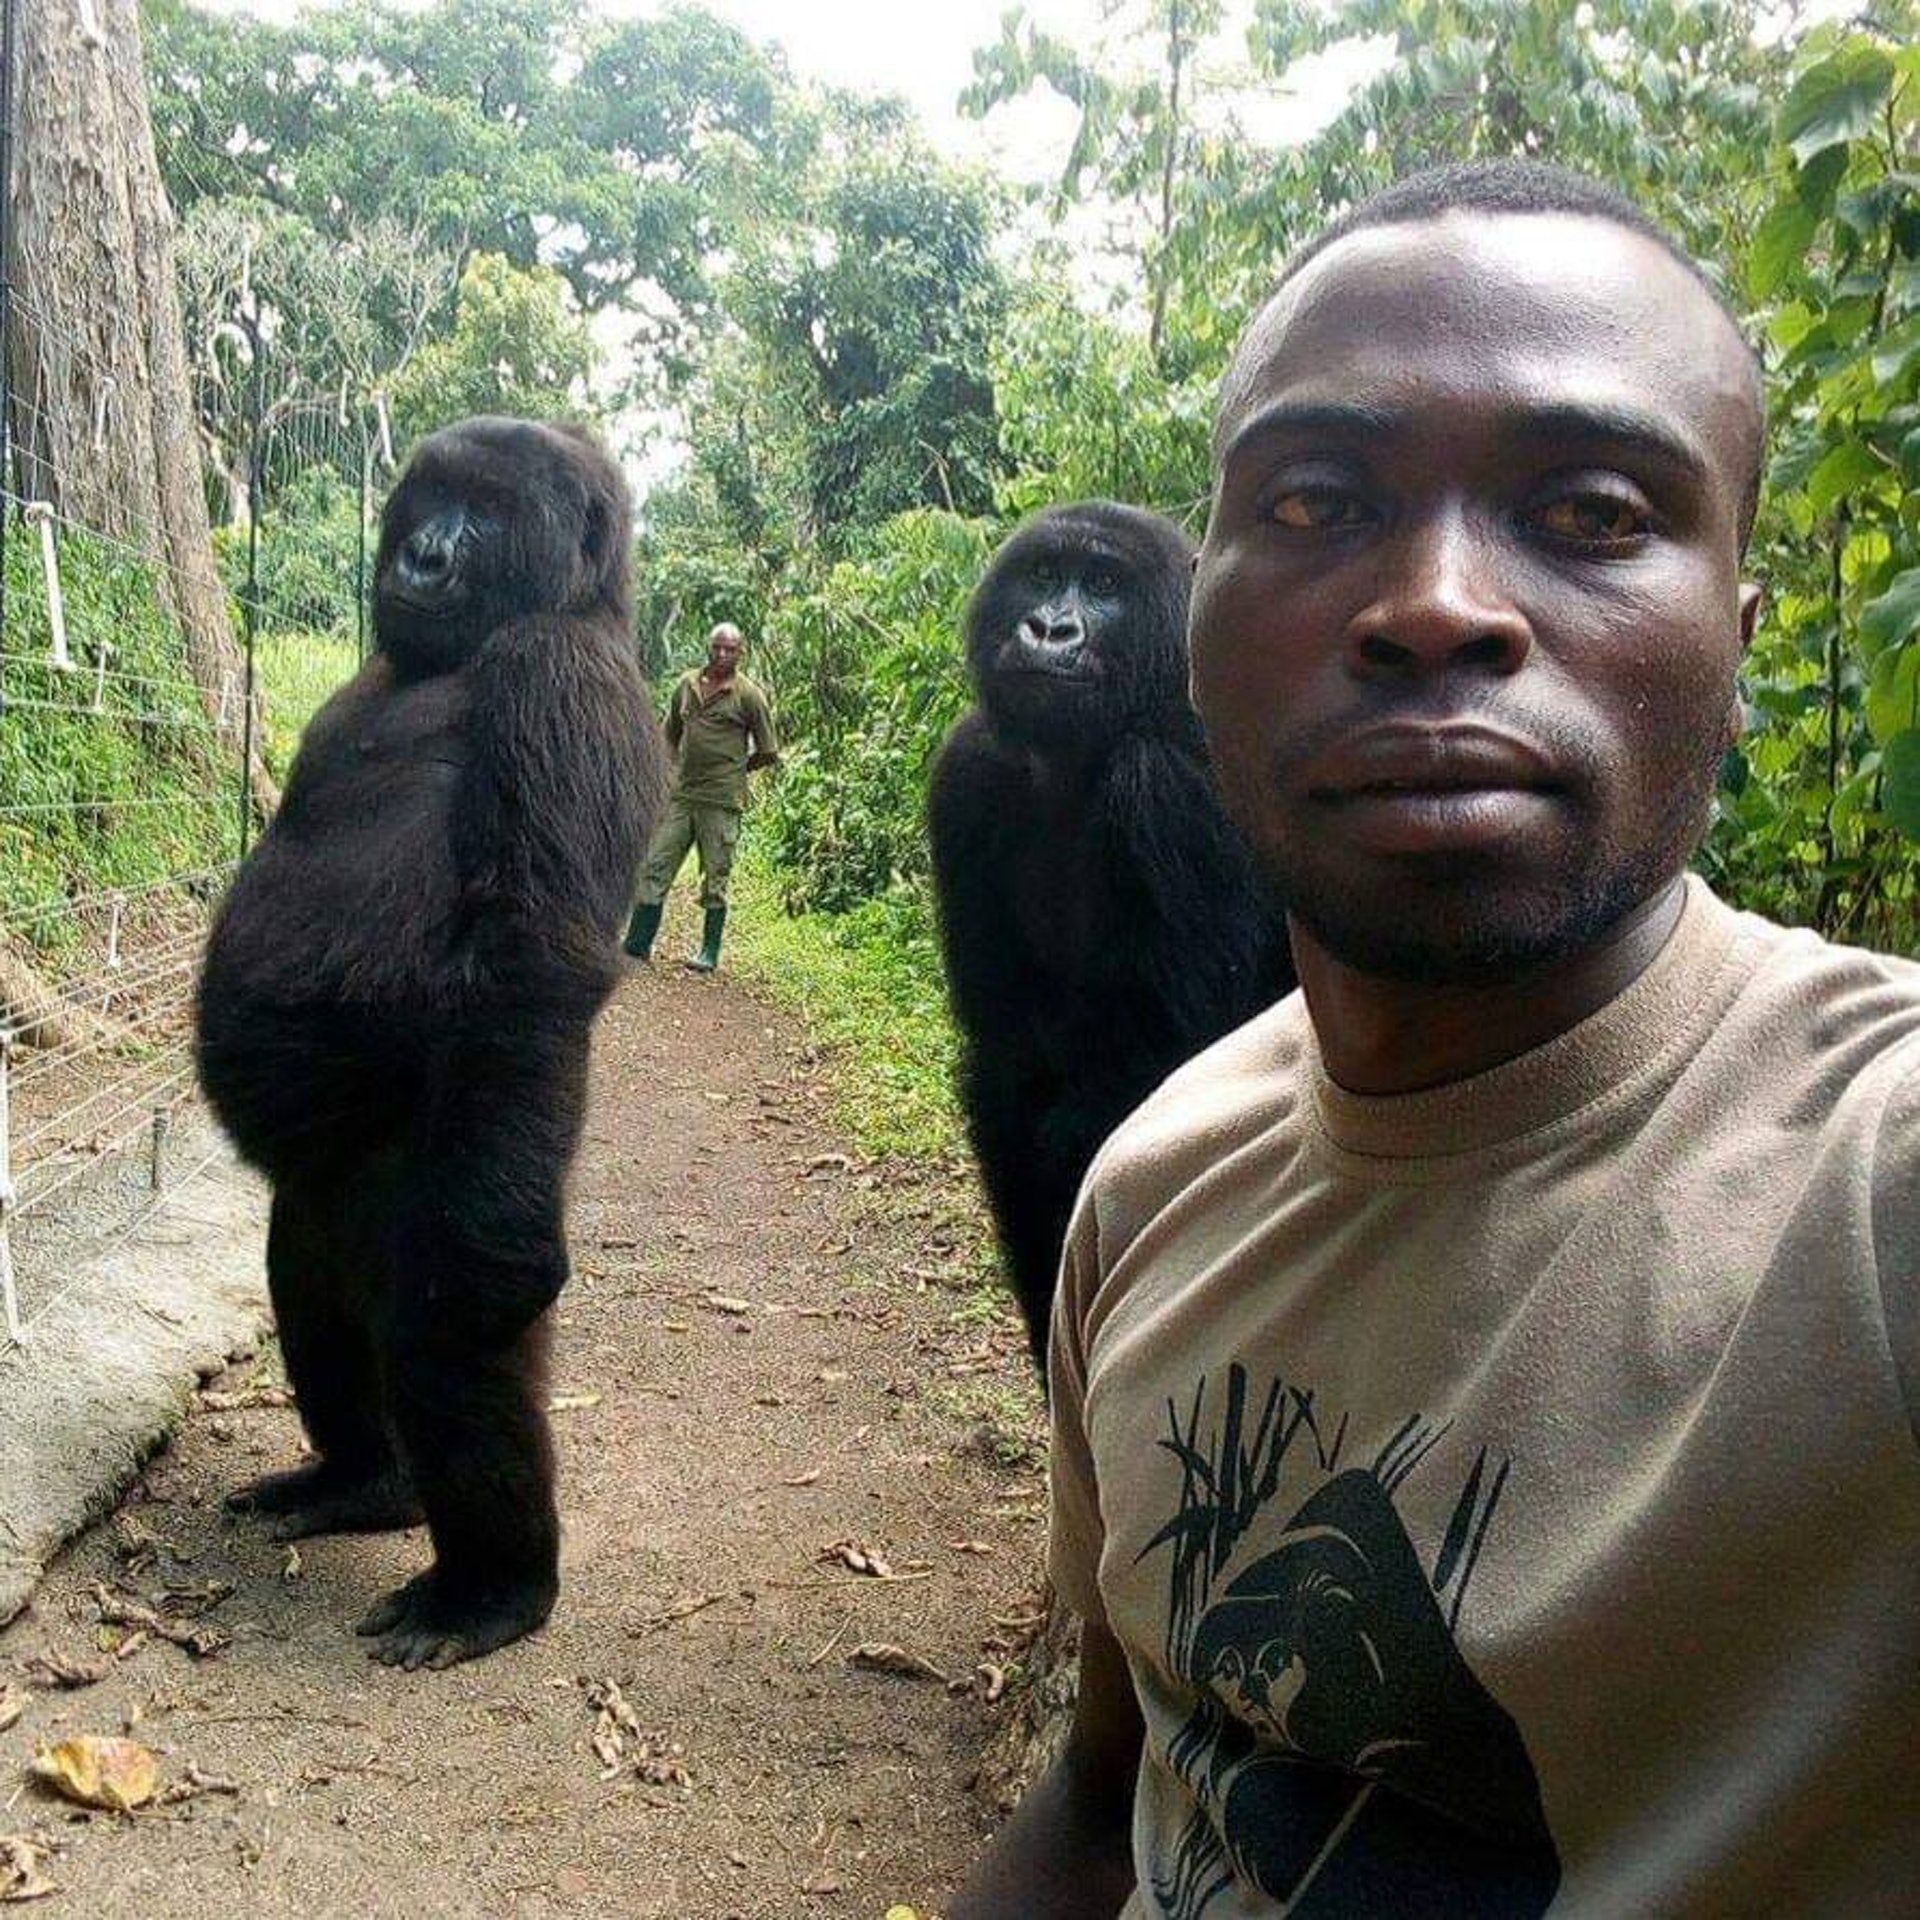 Het Senkwekwe centrum bij het Virunga National Park ontving talloze berichten over de foto. JA, het is echt! Blijkbaar gedragen die gorilla vrouwtjes zich altijd lekker schaamteloos, dus dit was de perfecte opname van hun ware persoonlijkheden!